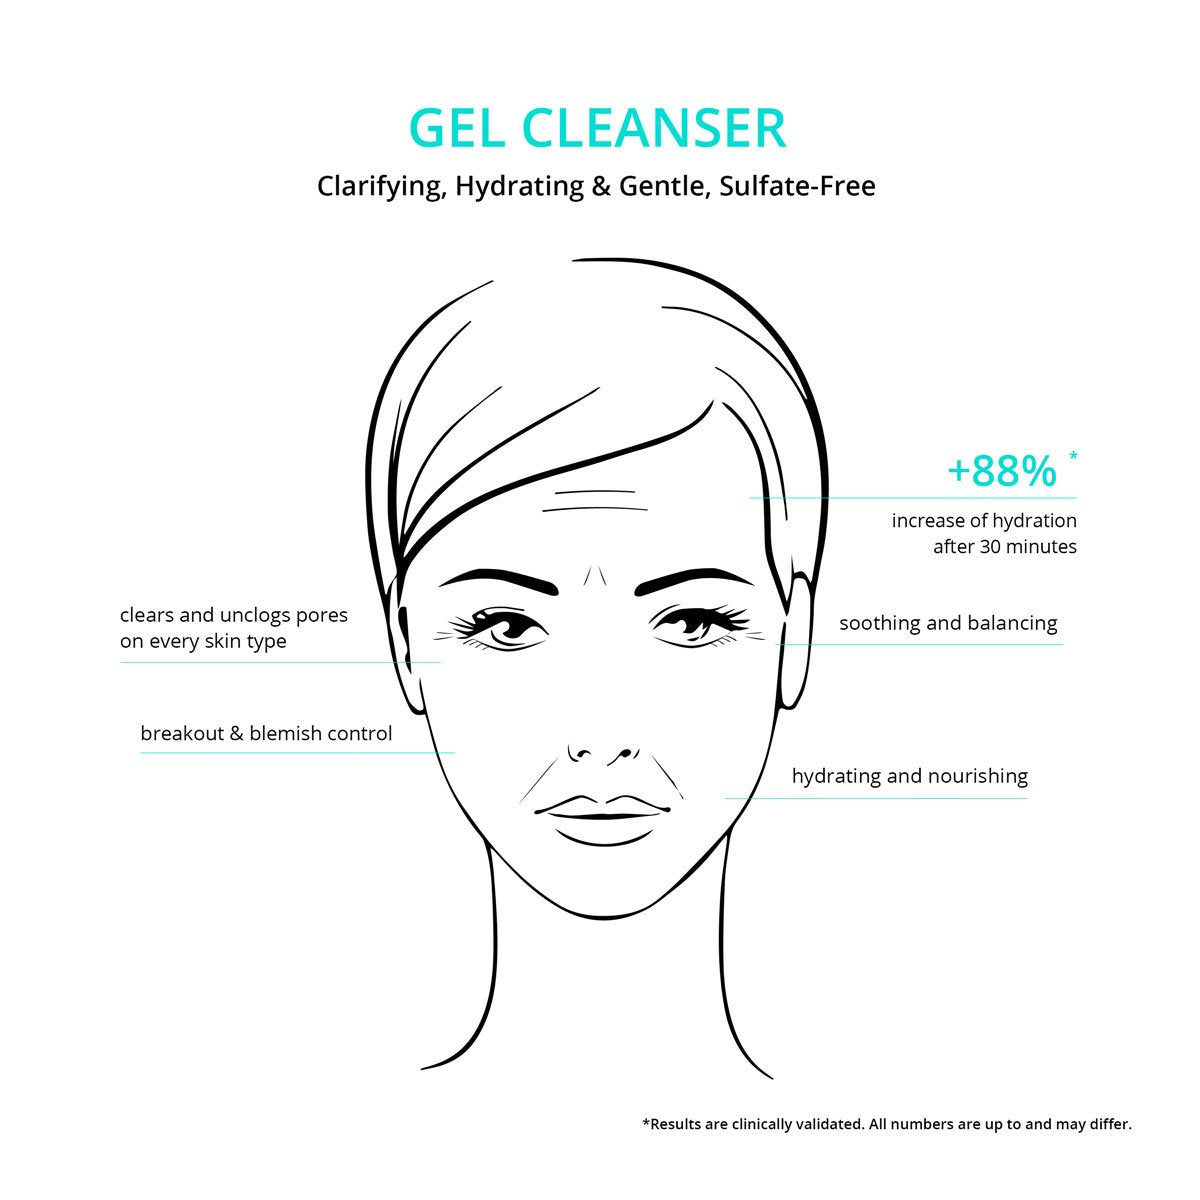 CNC-gel-cleanser-face-graph_1200_4bf39904-9d2b-4a69-94f6-d3a5826a23b